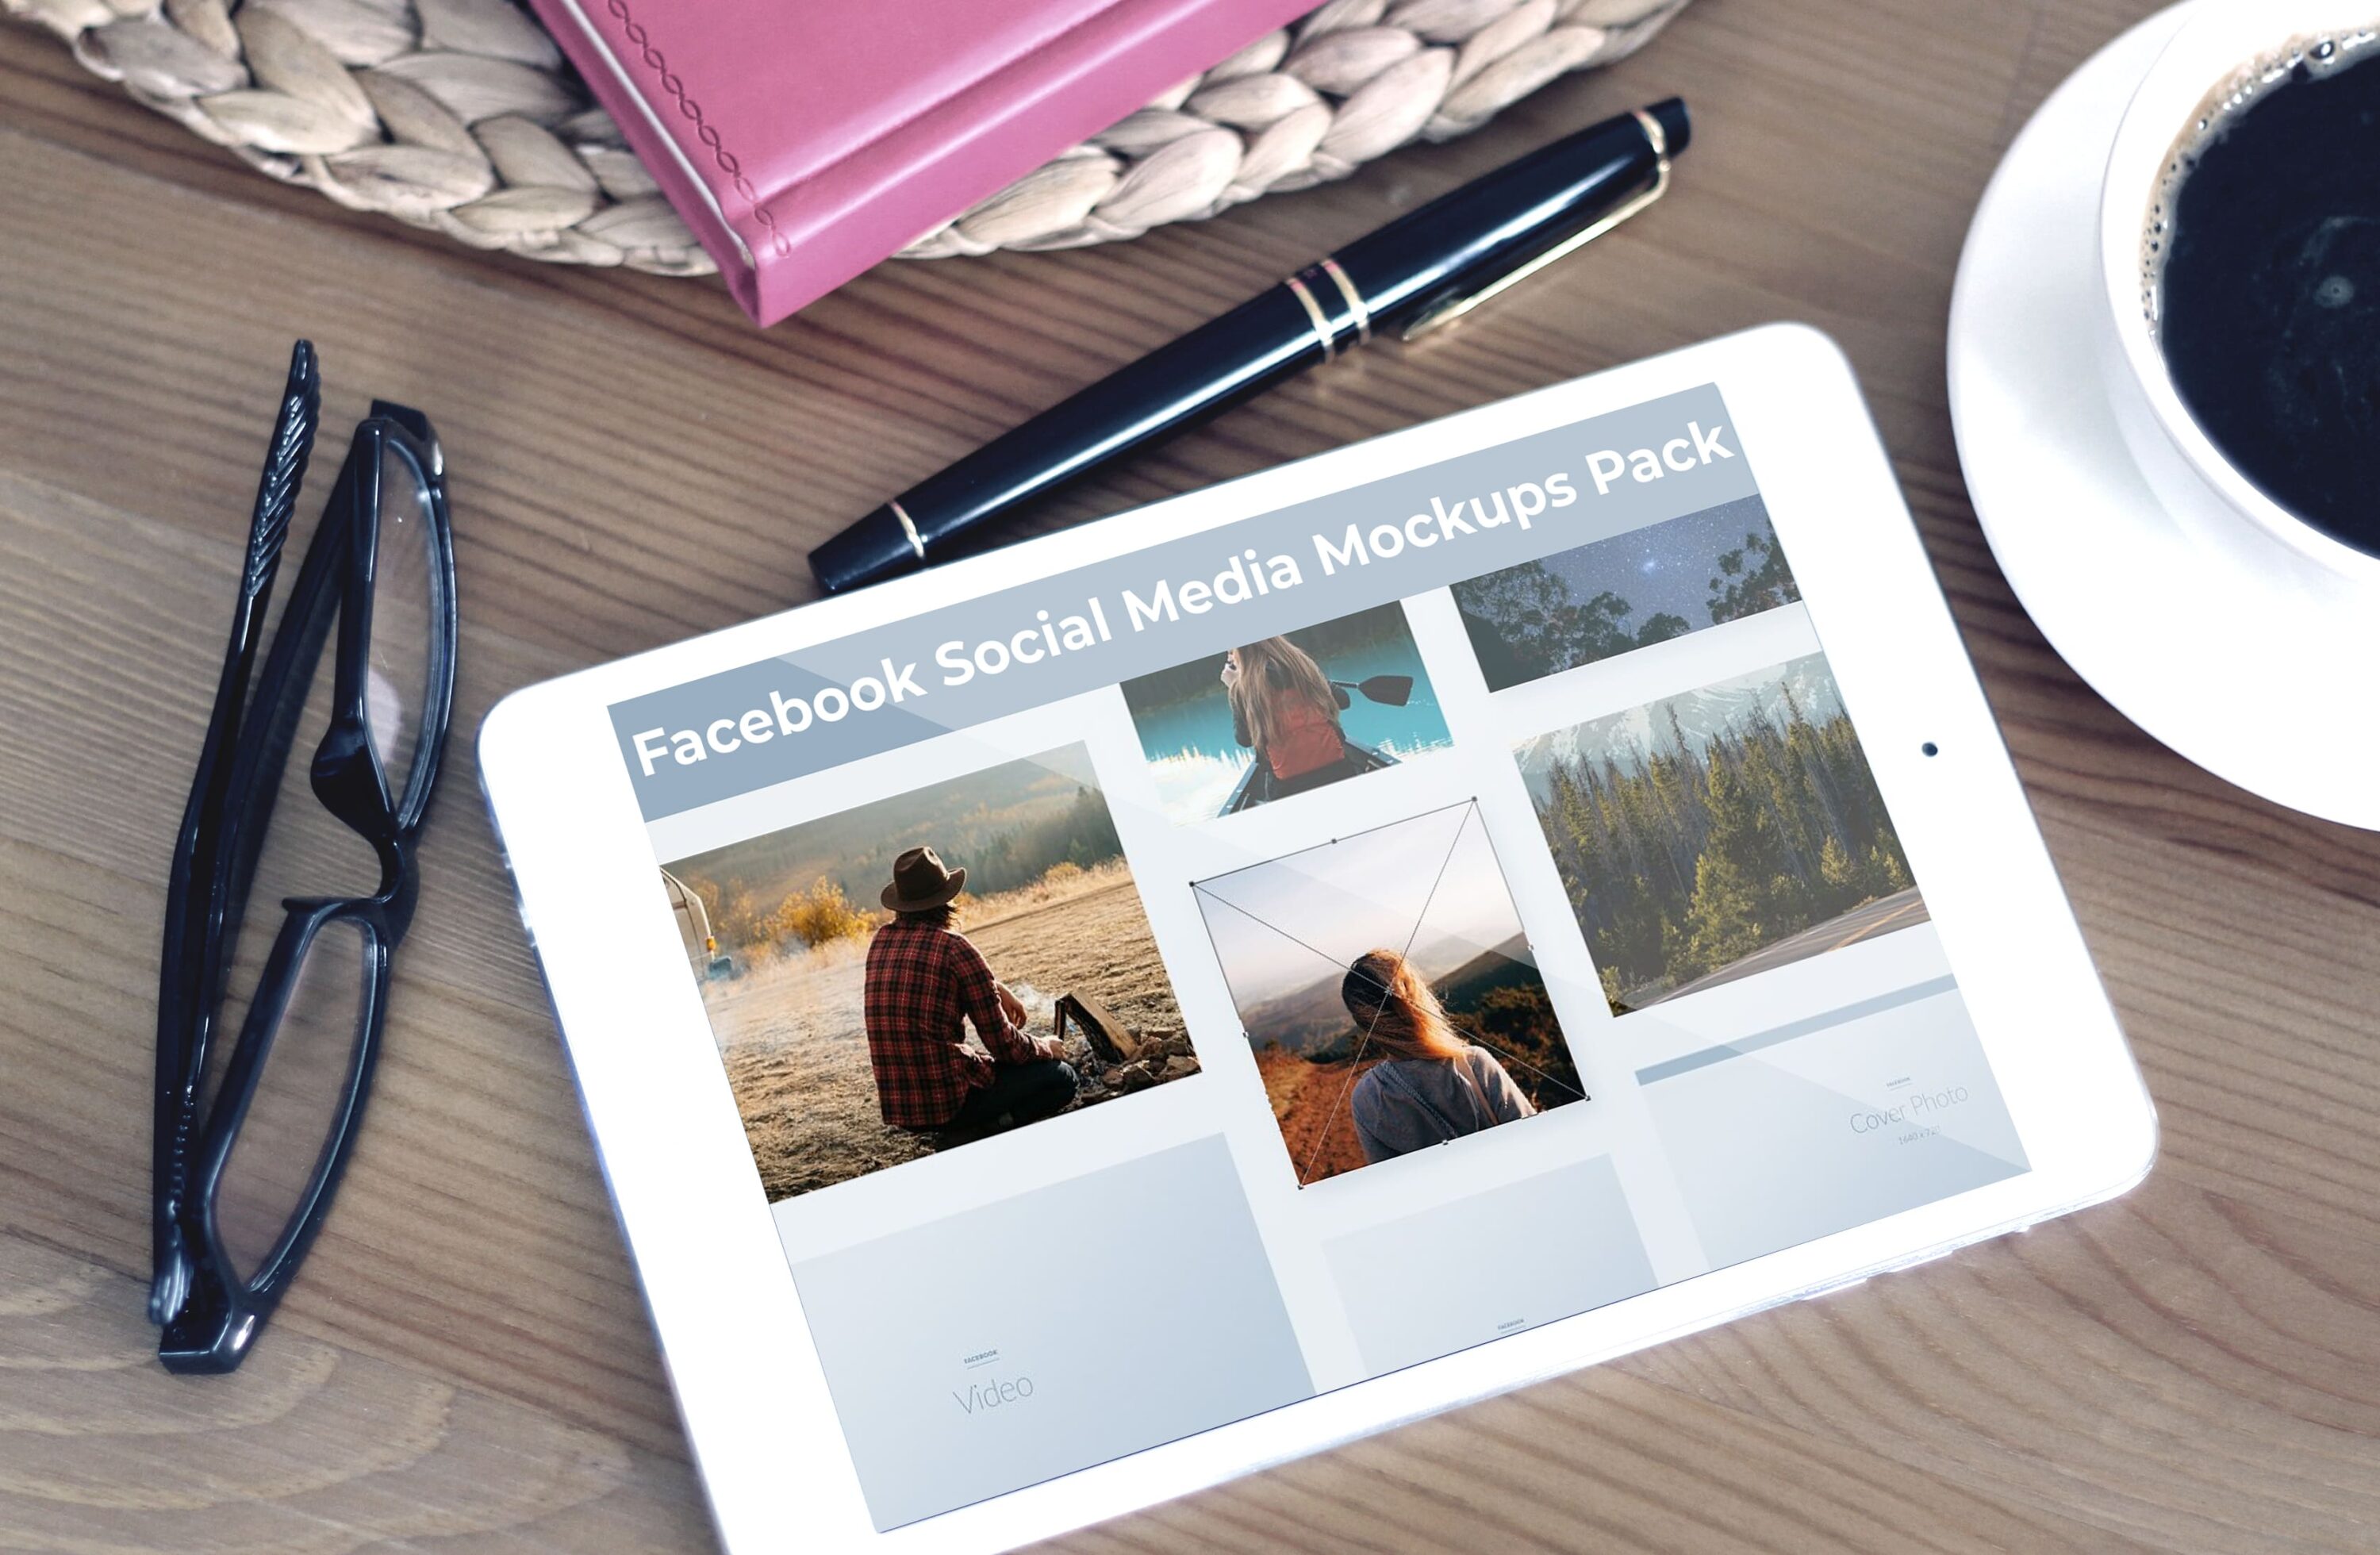 Tablet option of the Facebook Social Media Mockups Pack.